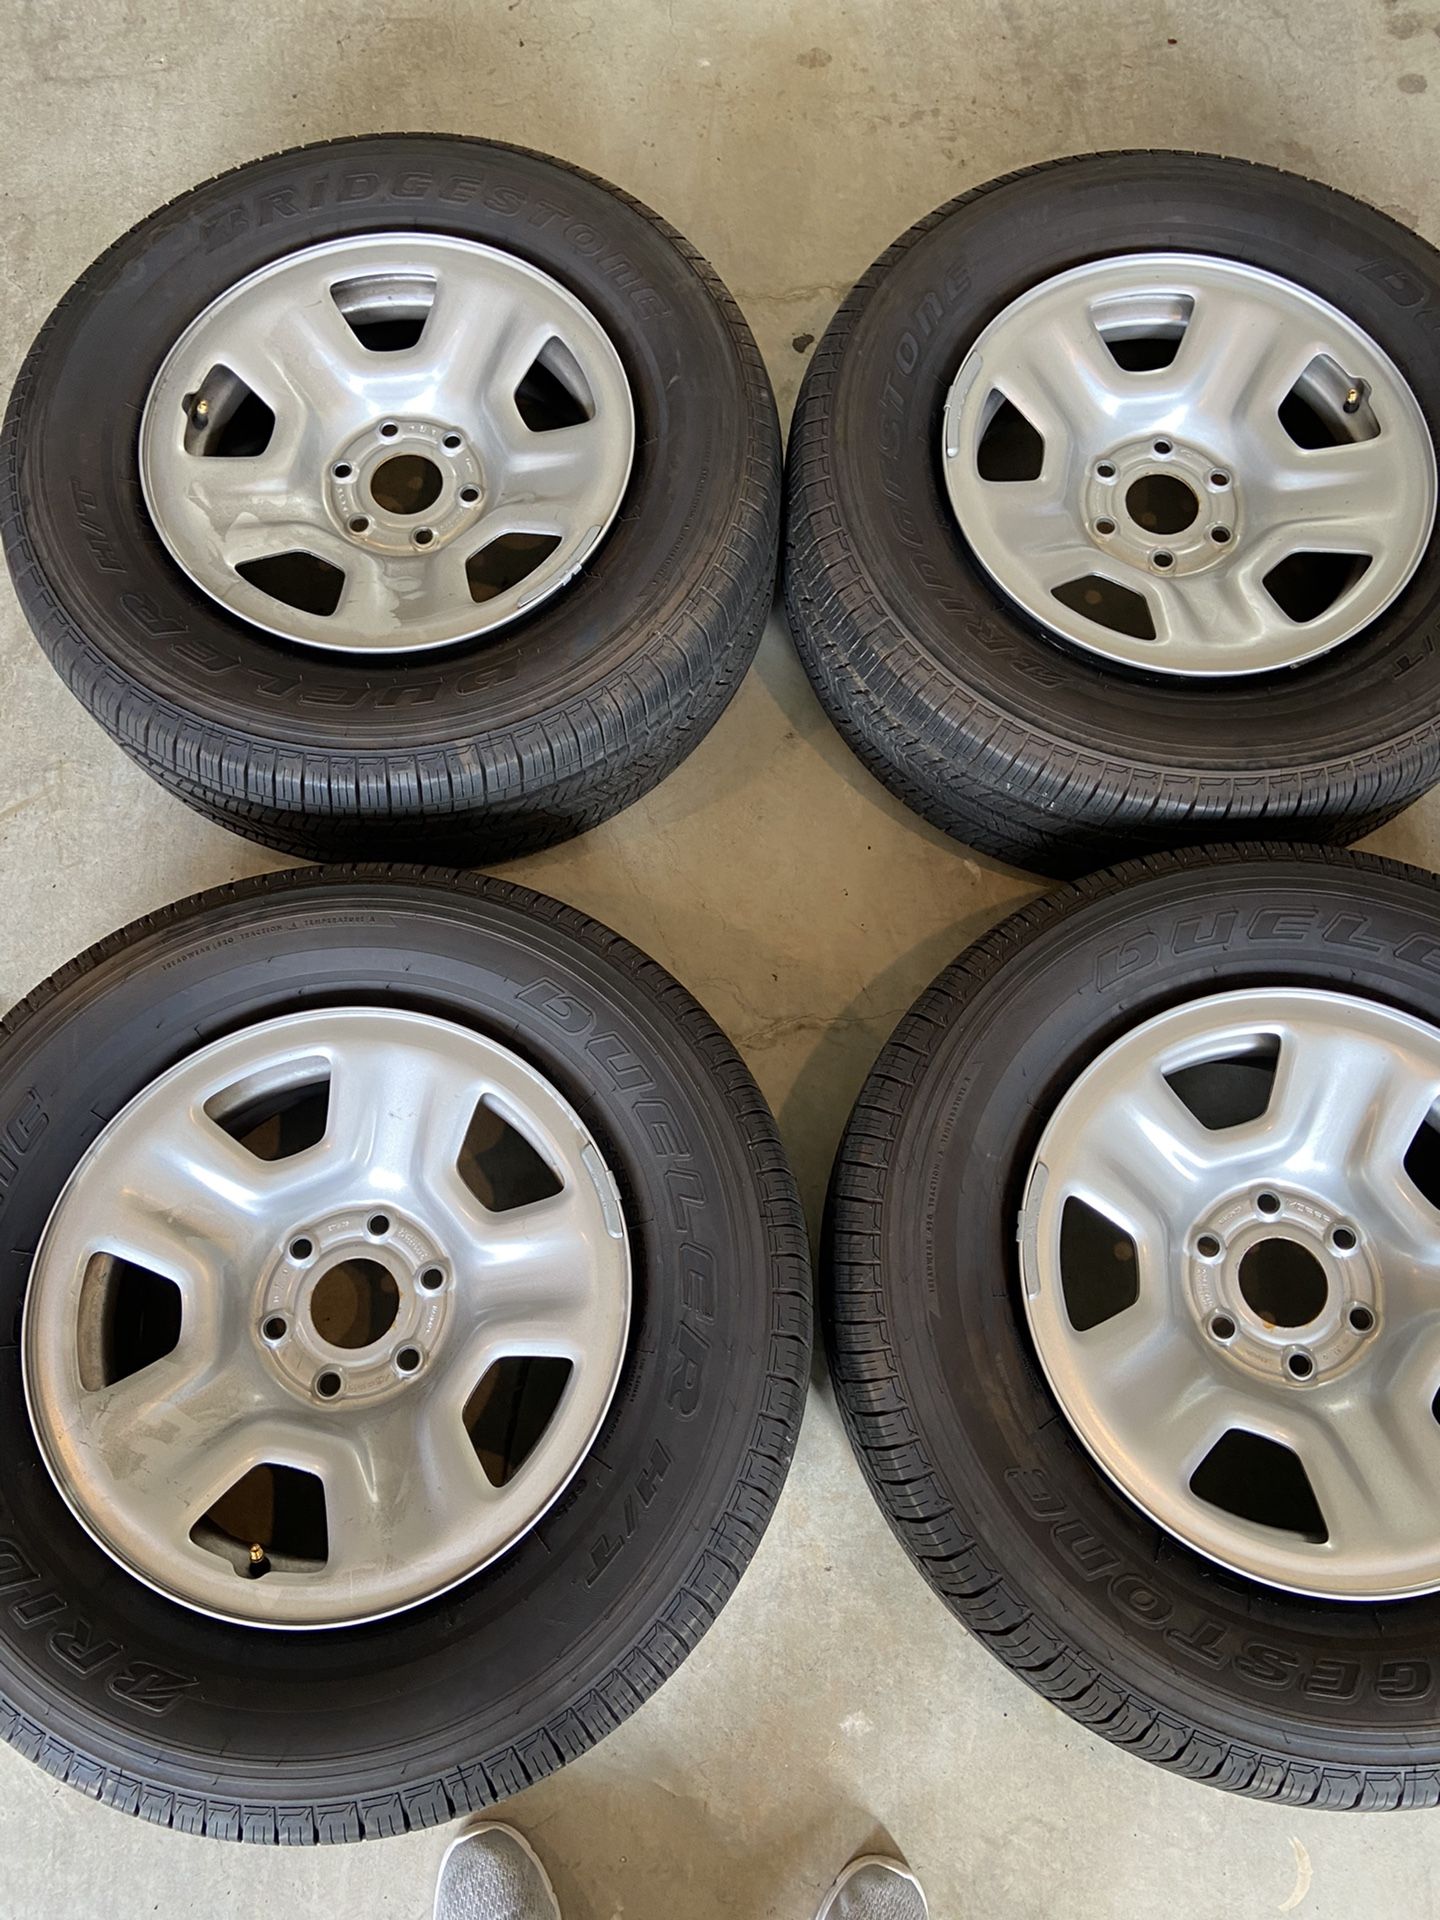 2019 Silverado wheels and tires